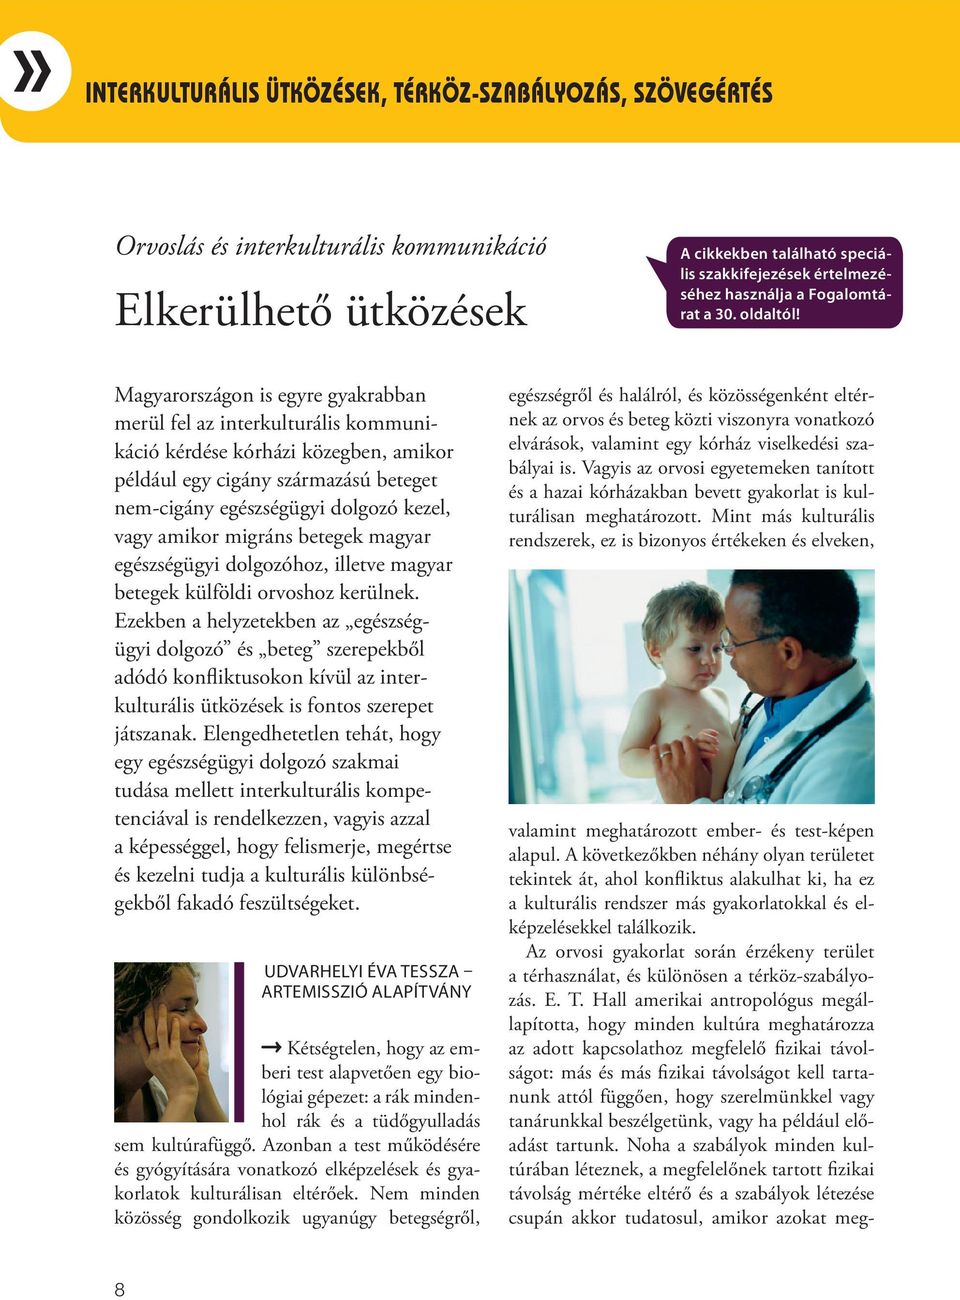 Magyarországon is egyre gyakrabban merül fel az interkulturális kommunikáció kérdése kórházi közegben, amikor például egy cigány származású beteget nem-cigány egészségügyi dolgozó kezel, vagy amikor